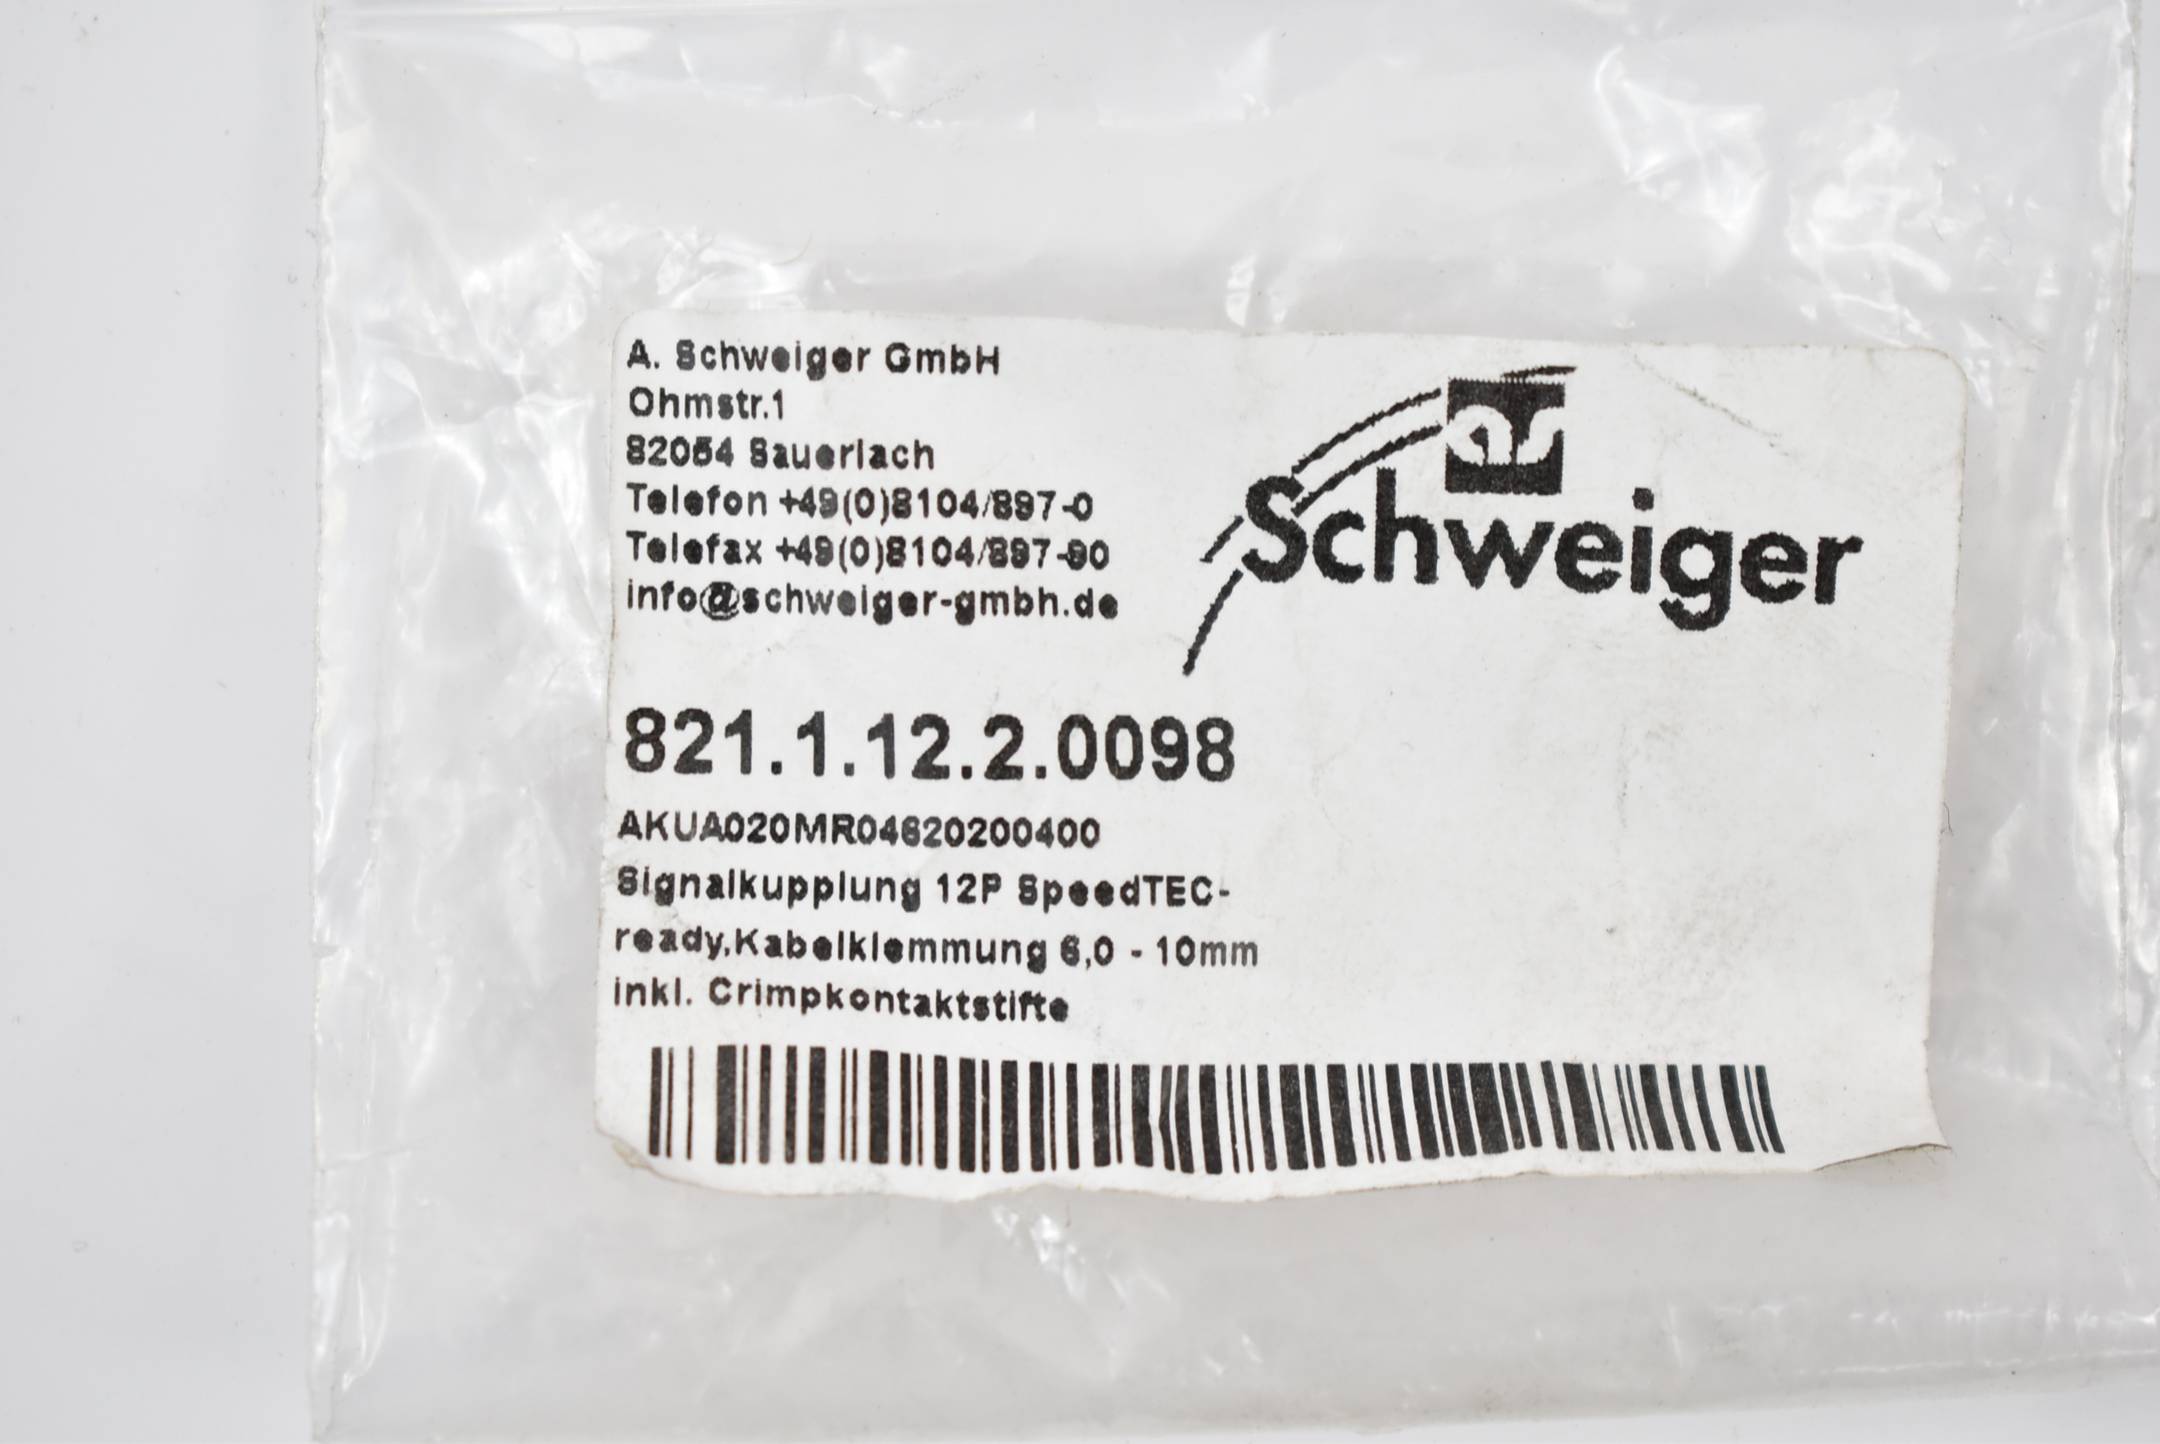 Schweiger Signalkupplung 12P SpeedTEC 821.1.12.2.0098